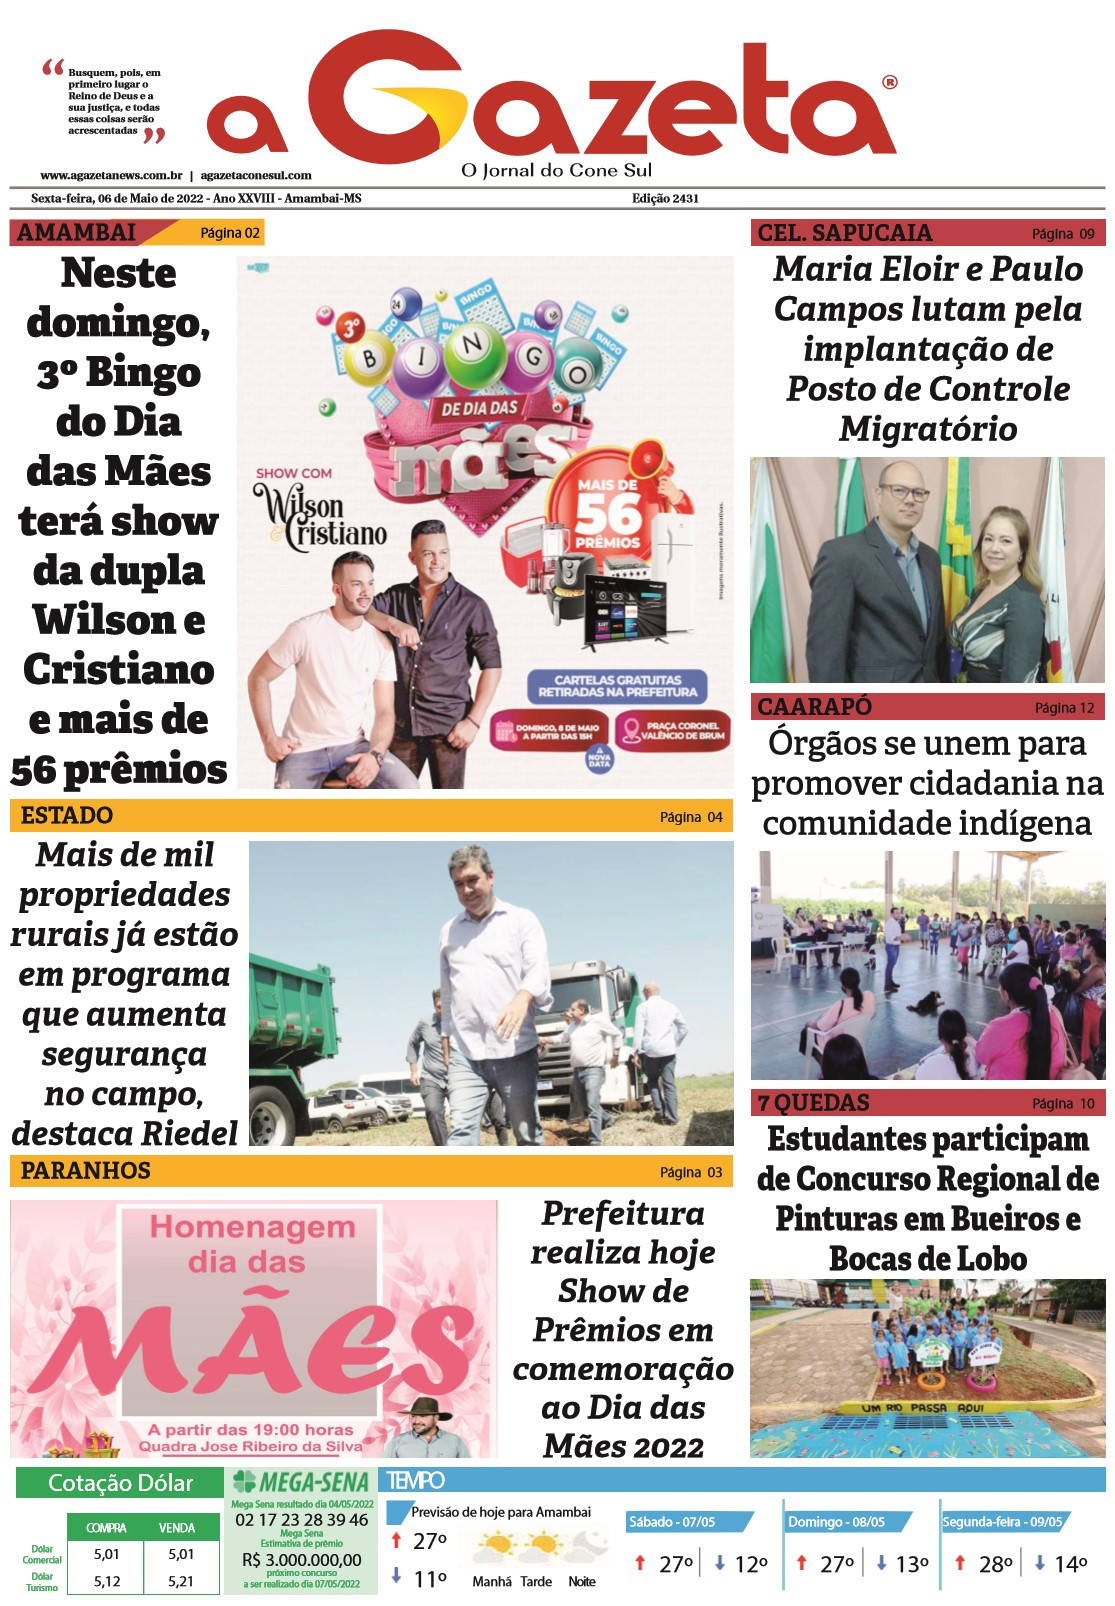 Confira a versão digital do jornal impresso A Gazeta desta sexta-feira, dia 06